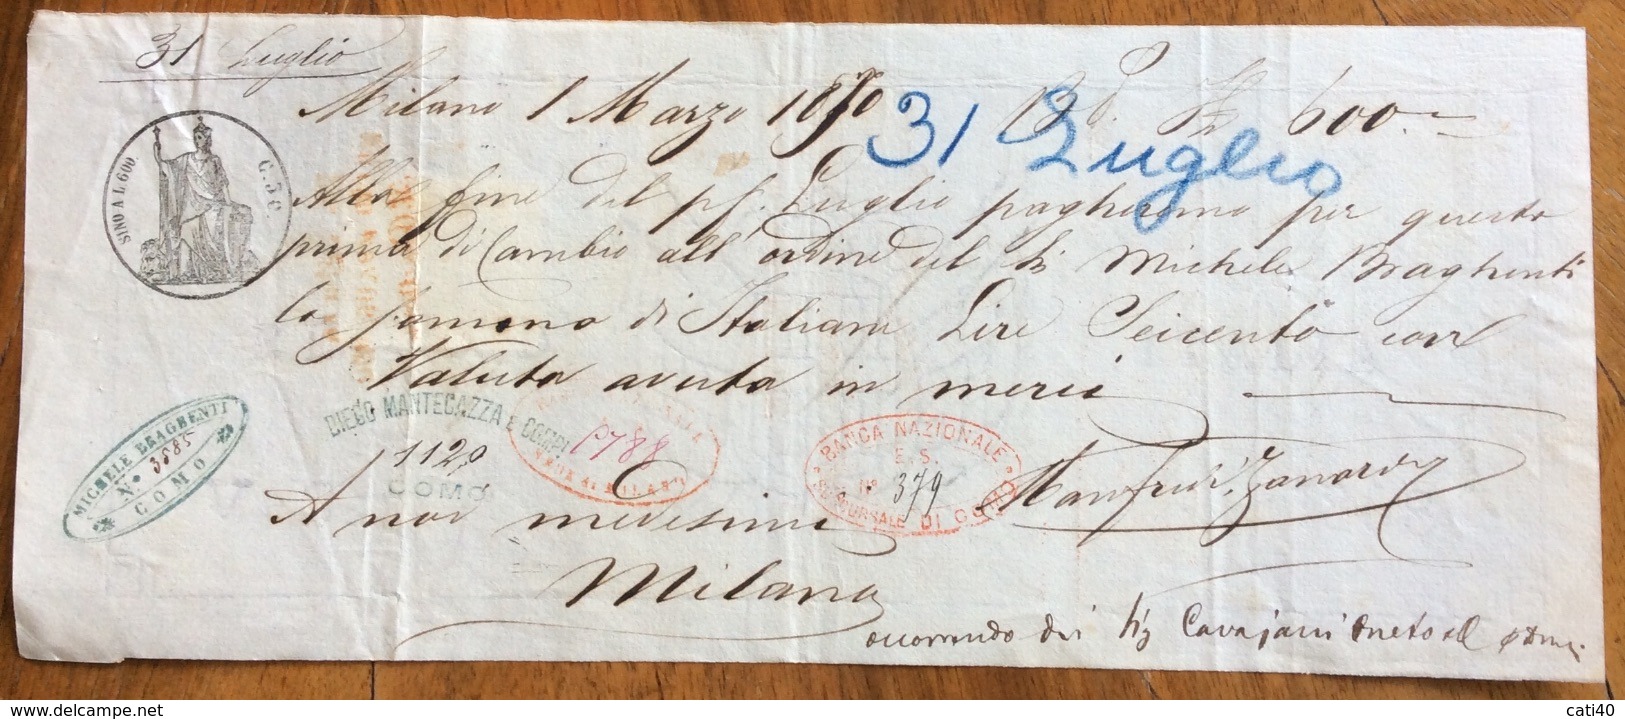 MARCA DA BOLLO SU CAMBIALE( 1868) MILANO 1870 DI 600  "con Valuta Avuta In MercI"   VARIE FIRME    DOCUMENTO ORIGINALE - Cambiali